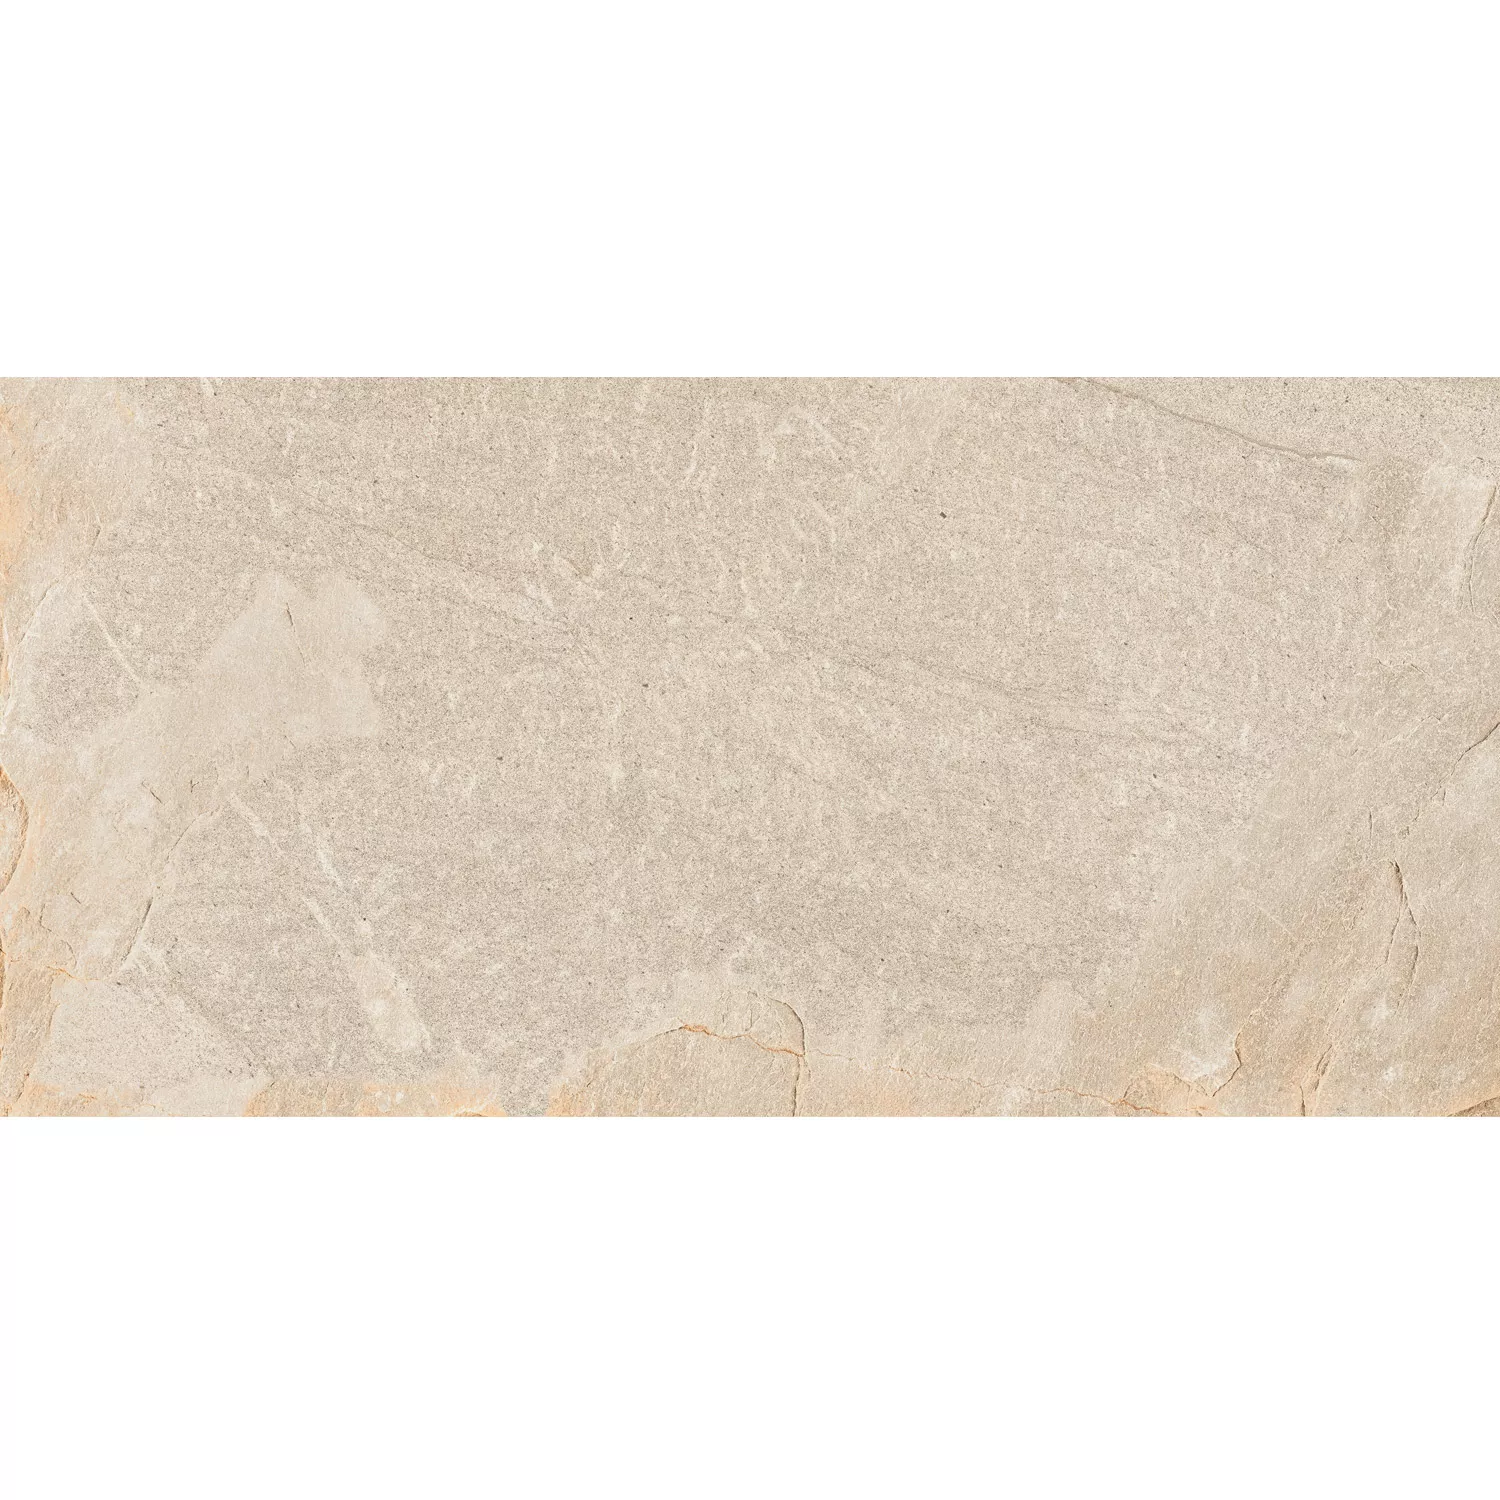 Sample Floor Tiles Homeland Natural Stone Optic R10 Beige 30x60cm